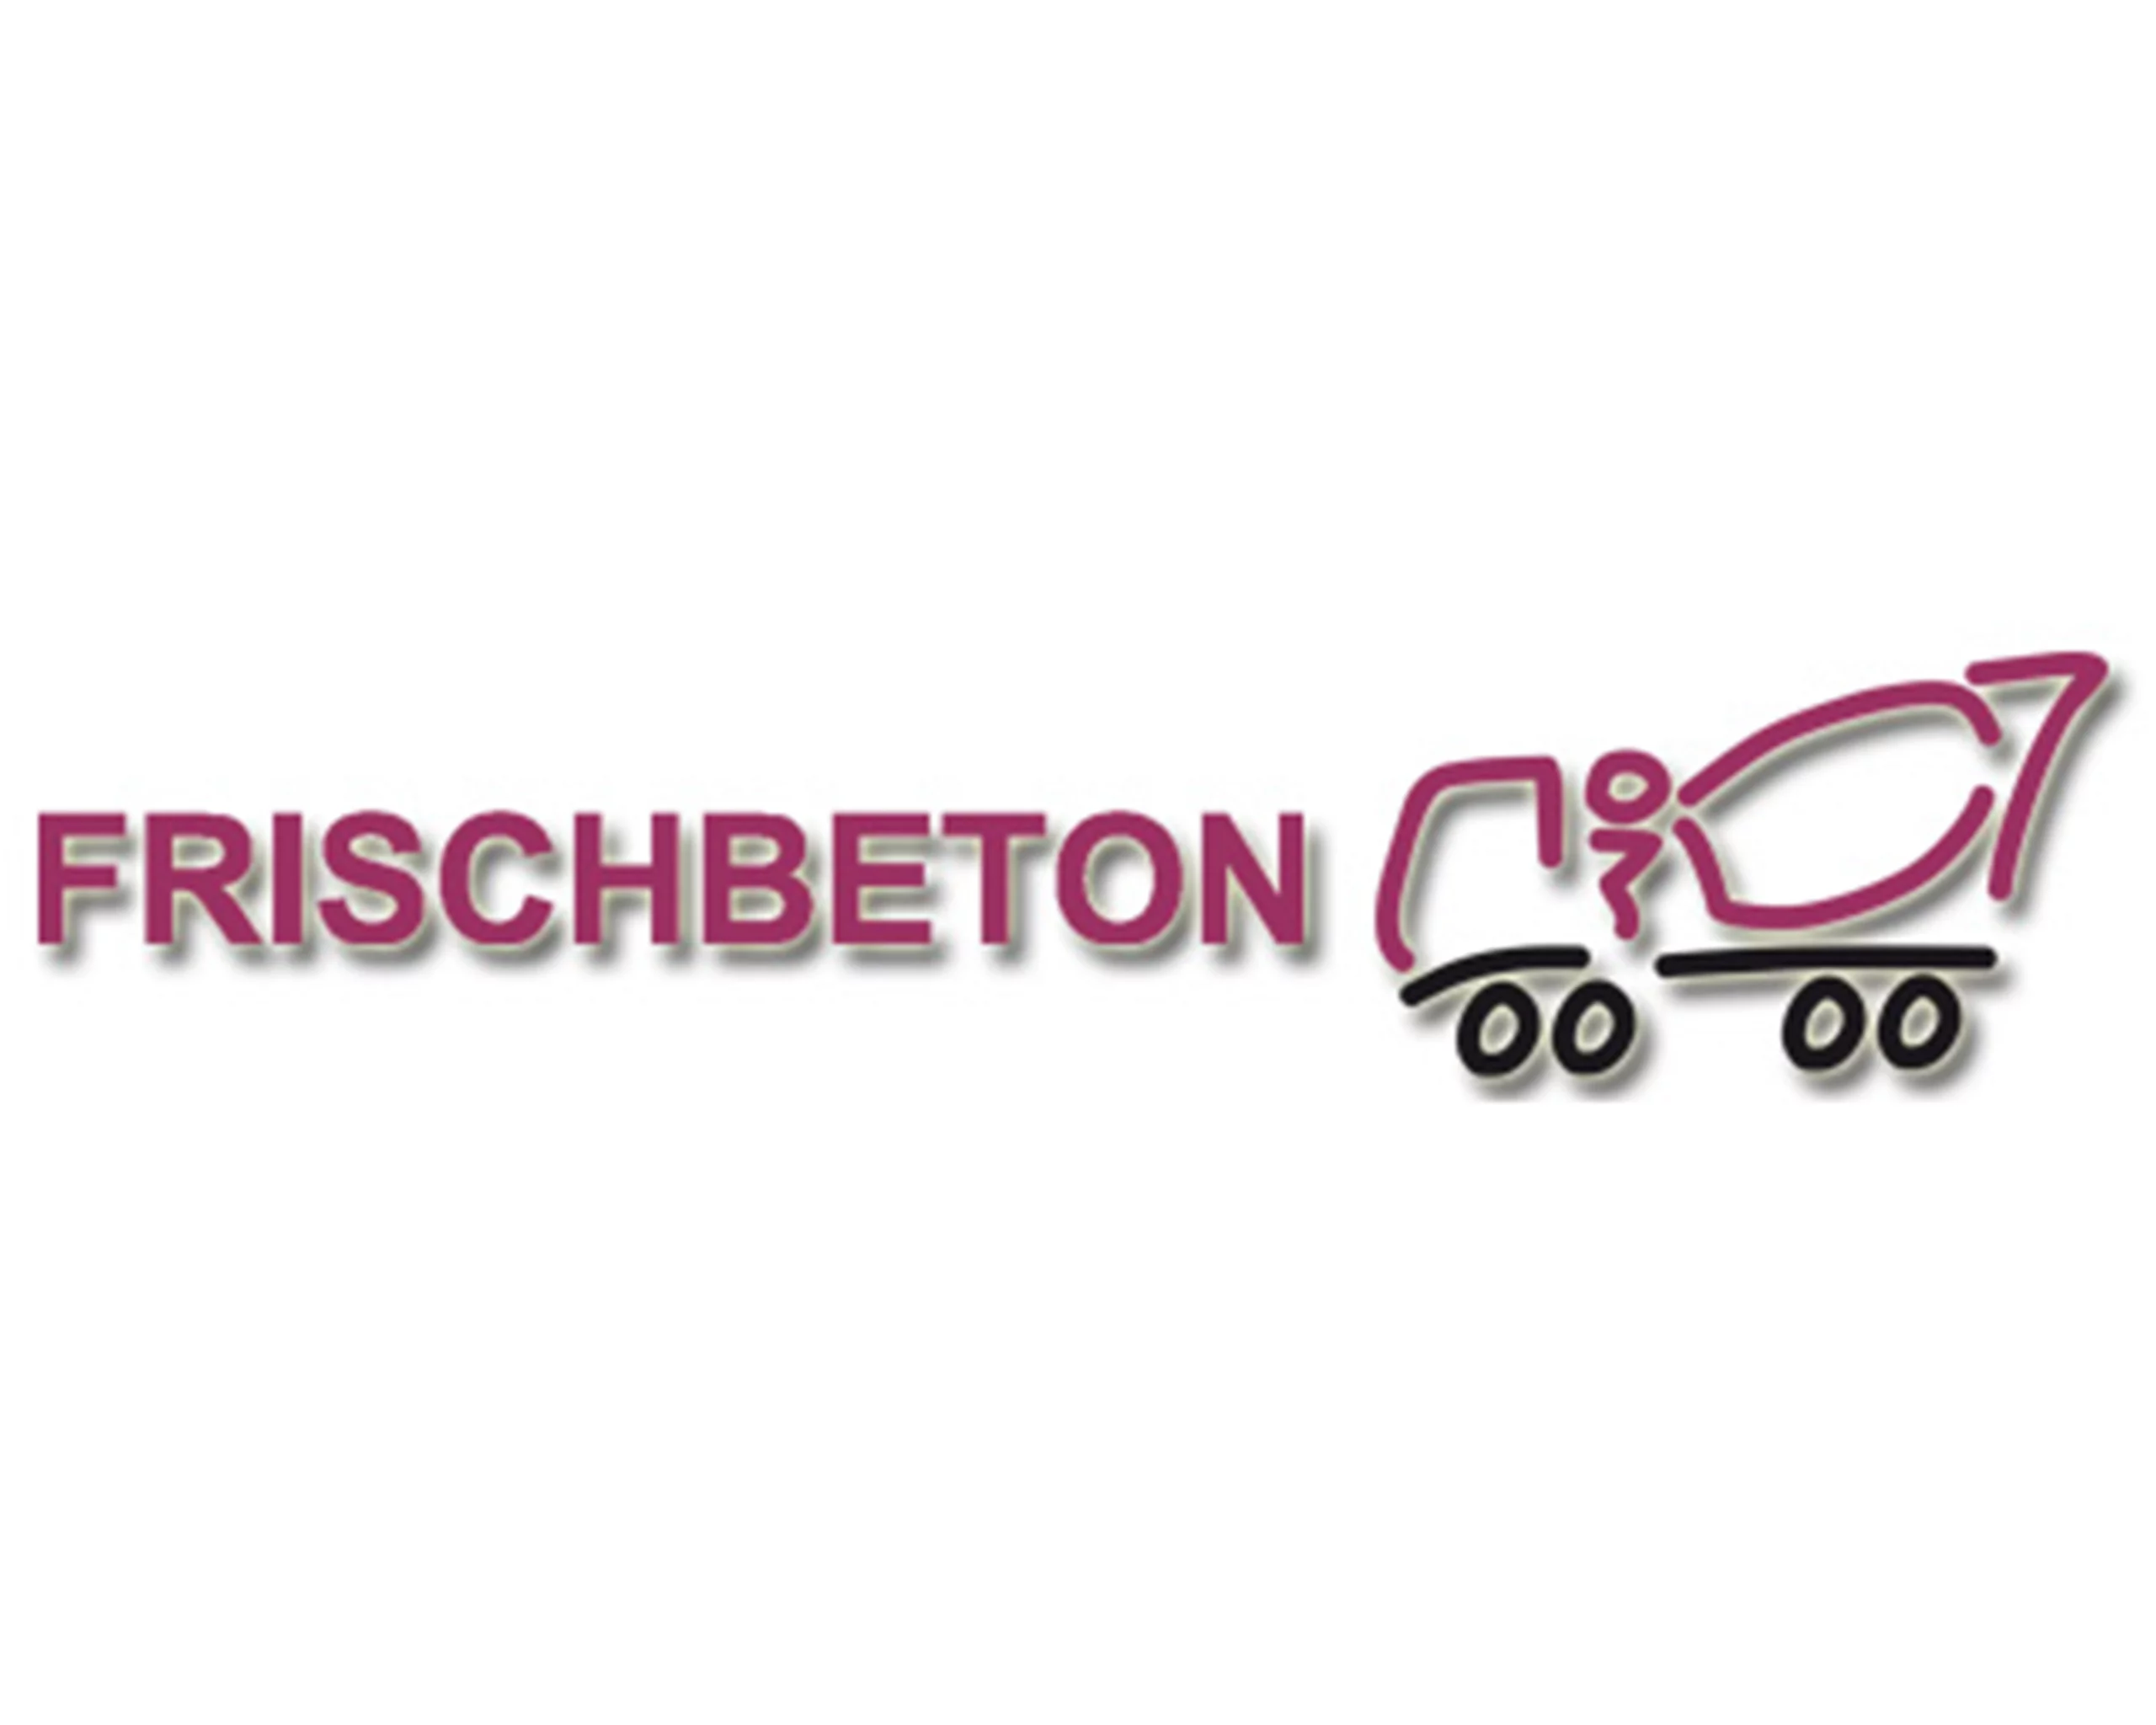 frischbeton-logo1-1